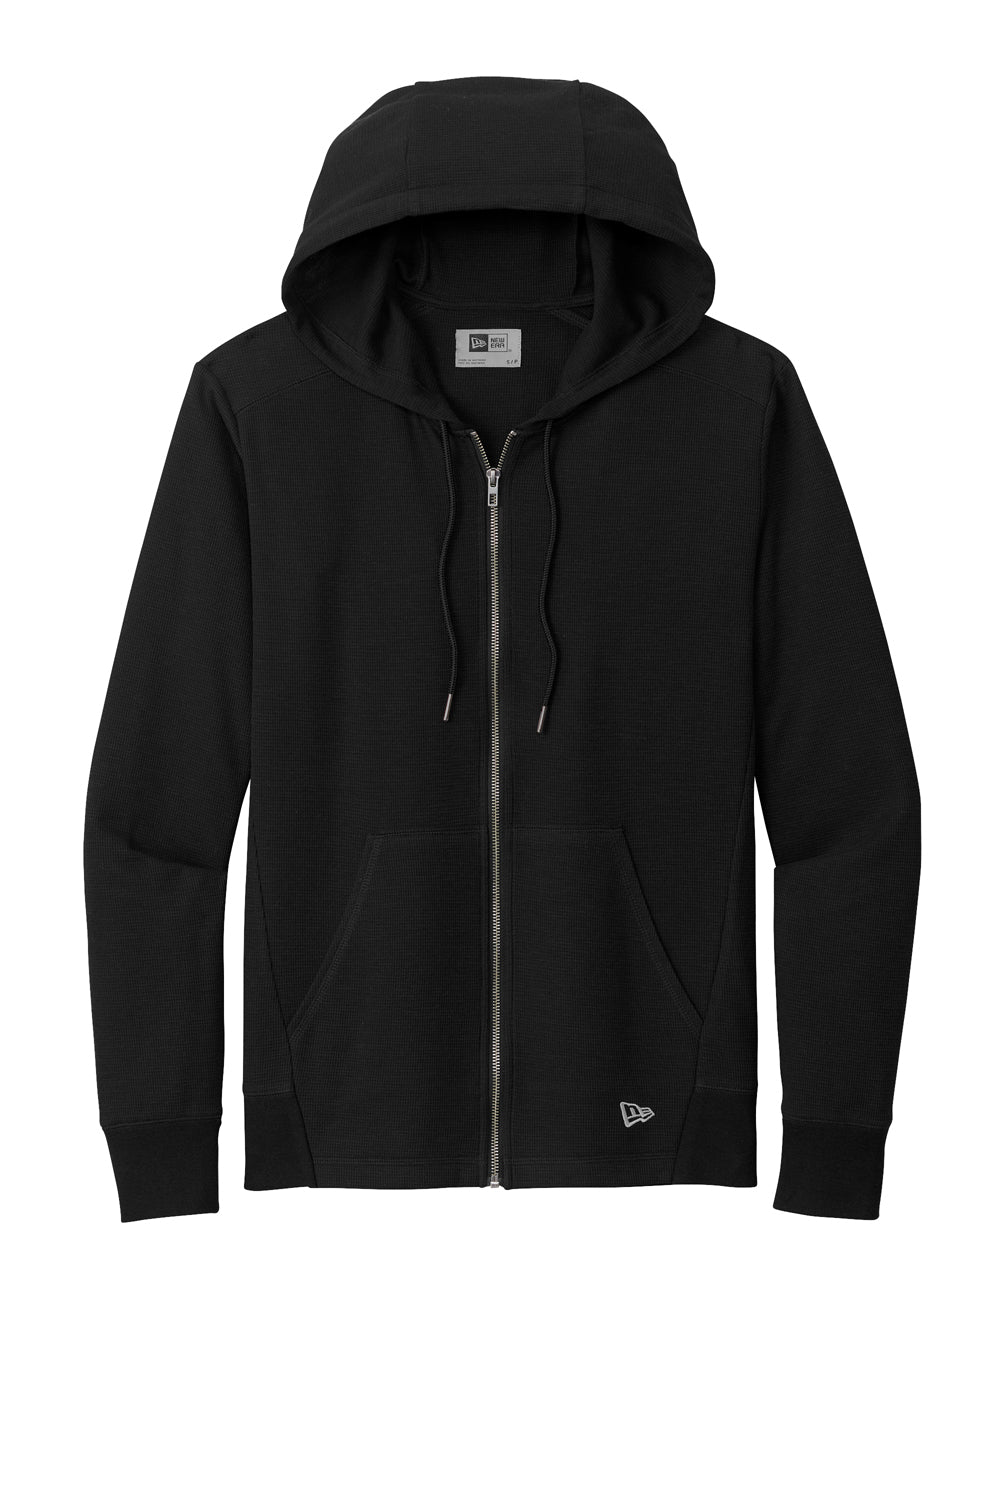 New Era NEA141 Thermal Full Zip Hooded Sweatshirt Hoodie Black Flat Front